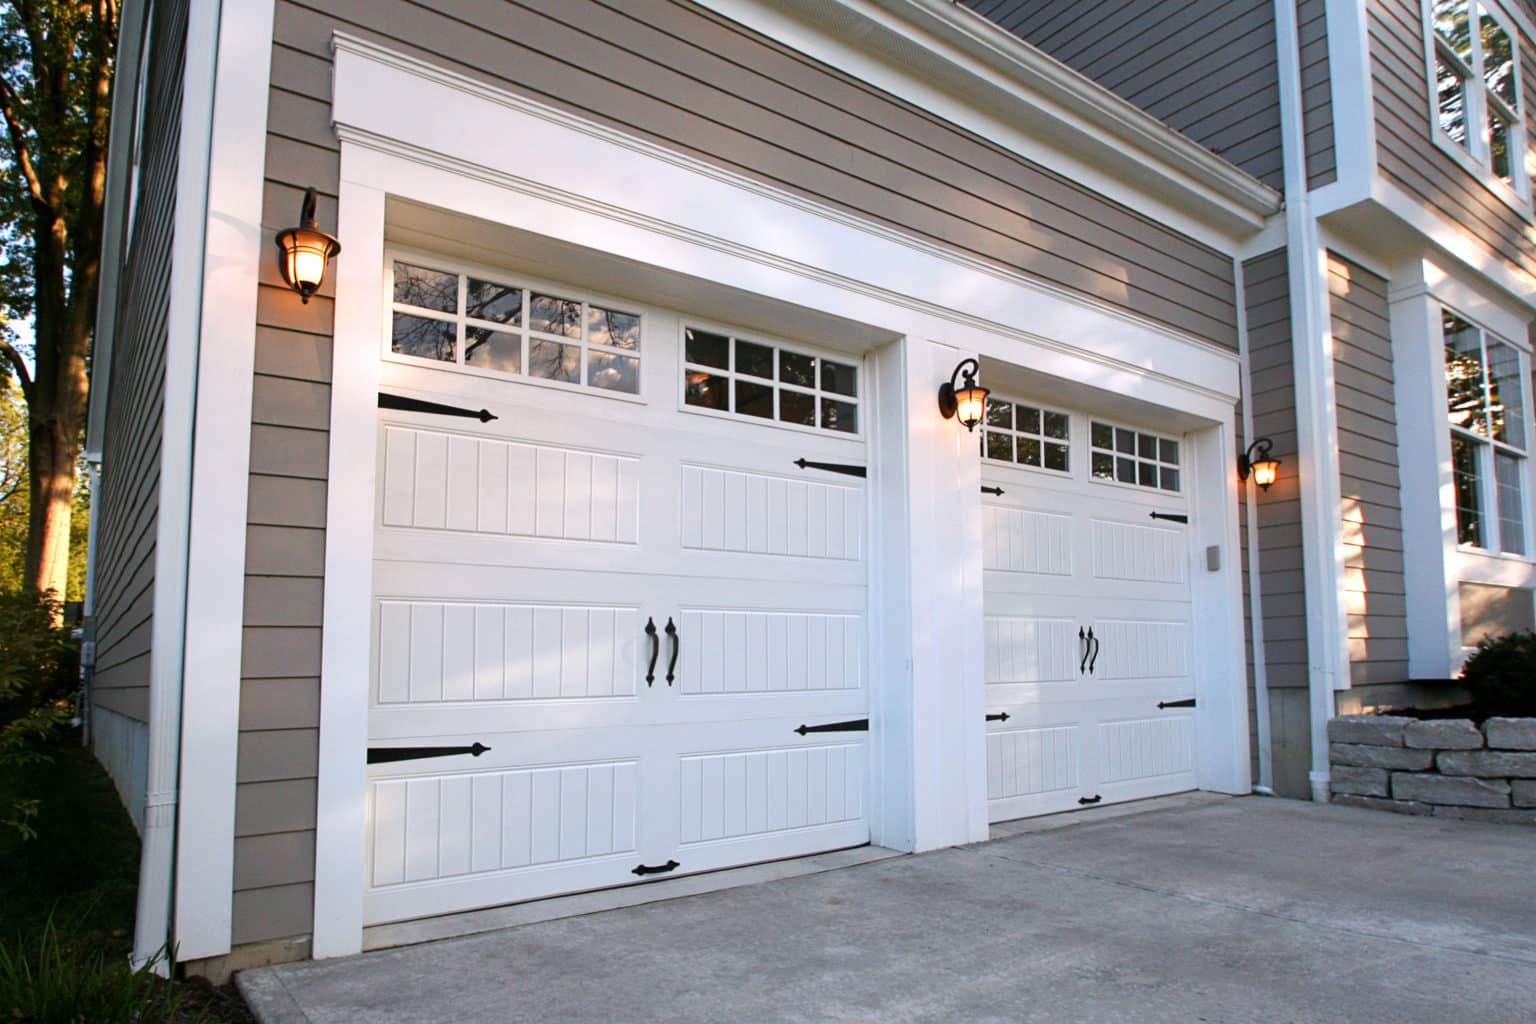 Sold Clopay Gallery Garage Door 10 0 Wide X 8 0 High Canadian